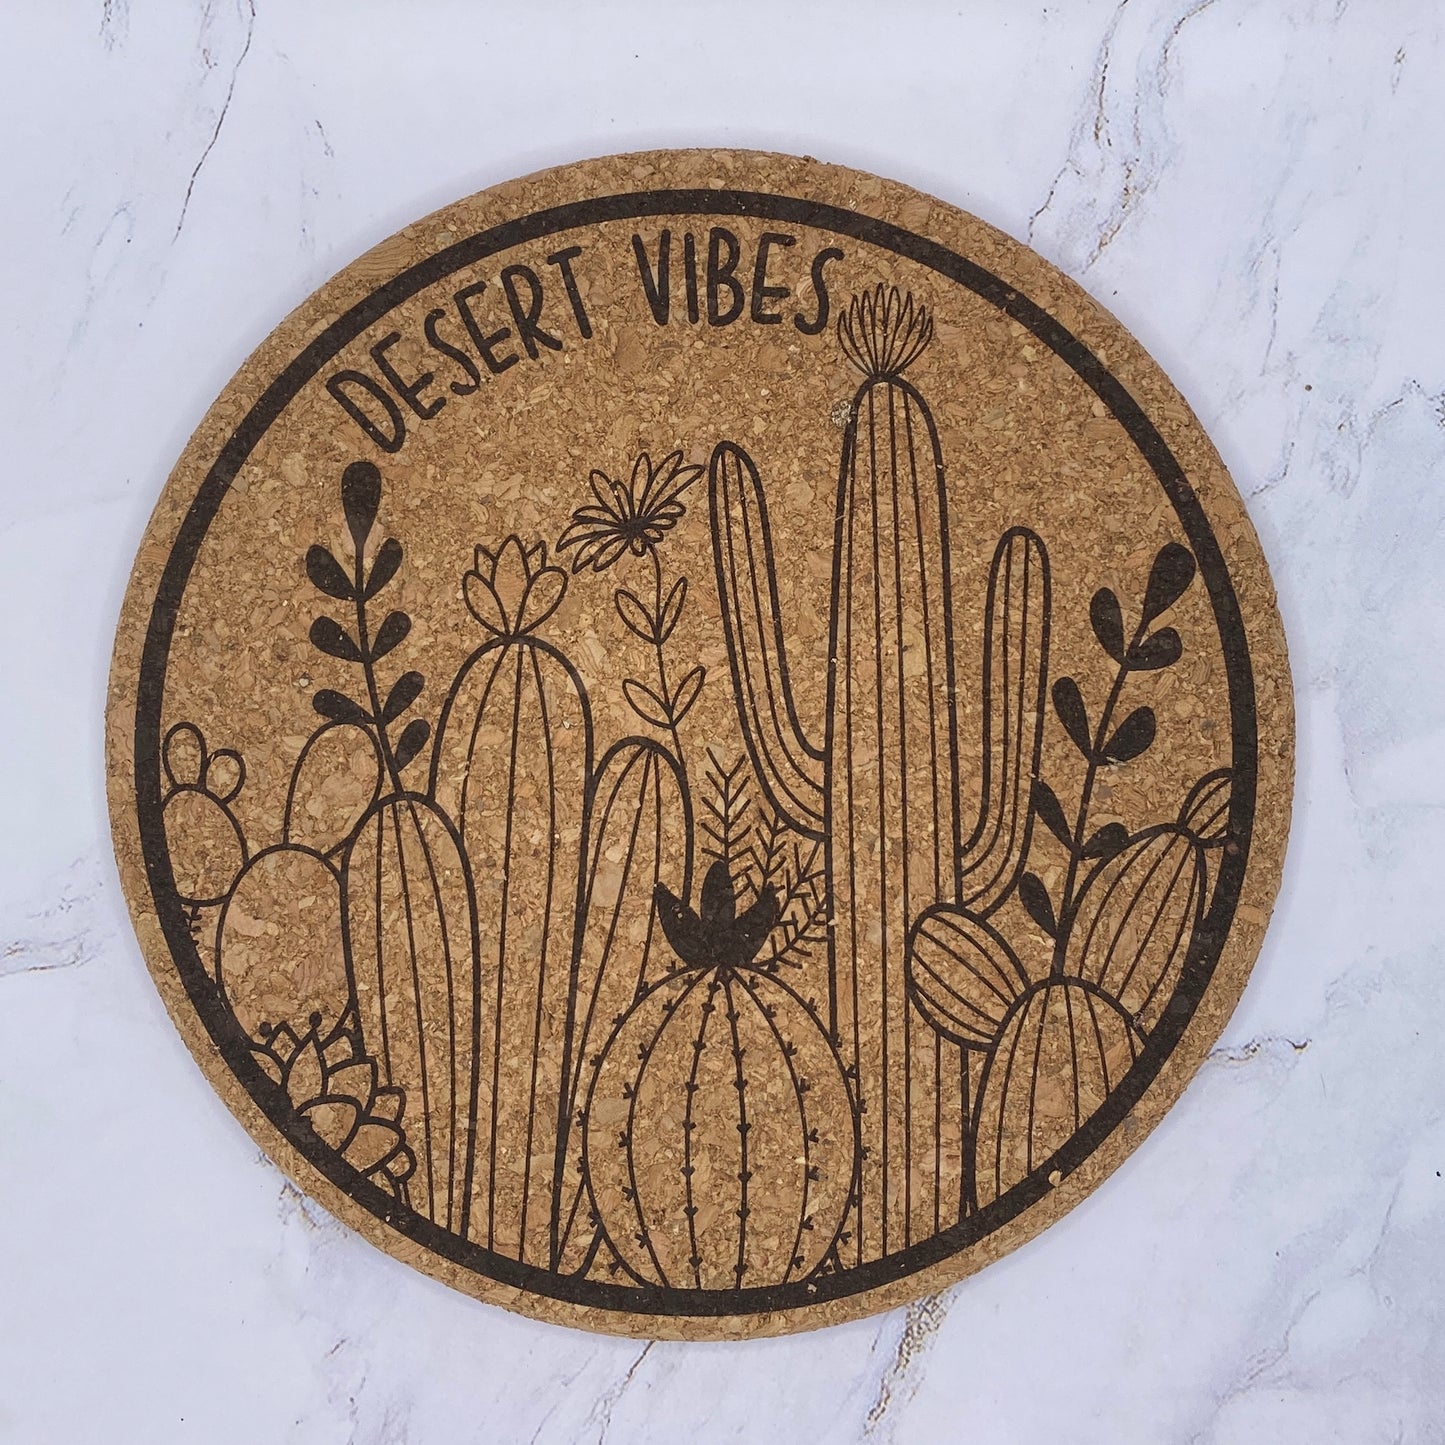 DESERT VIBES Engraved Trivet by Studio Primrose